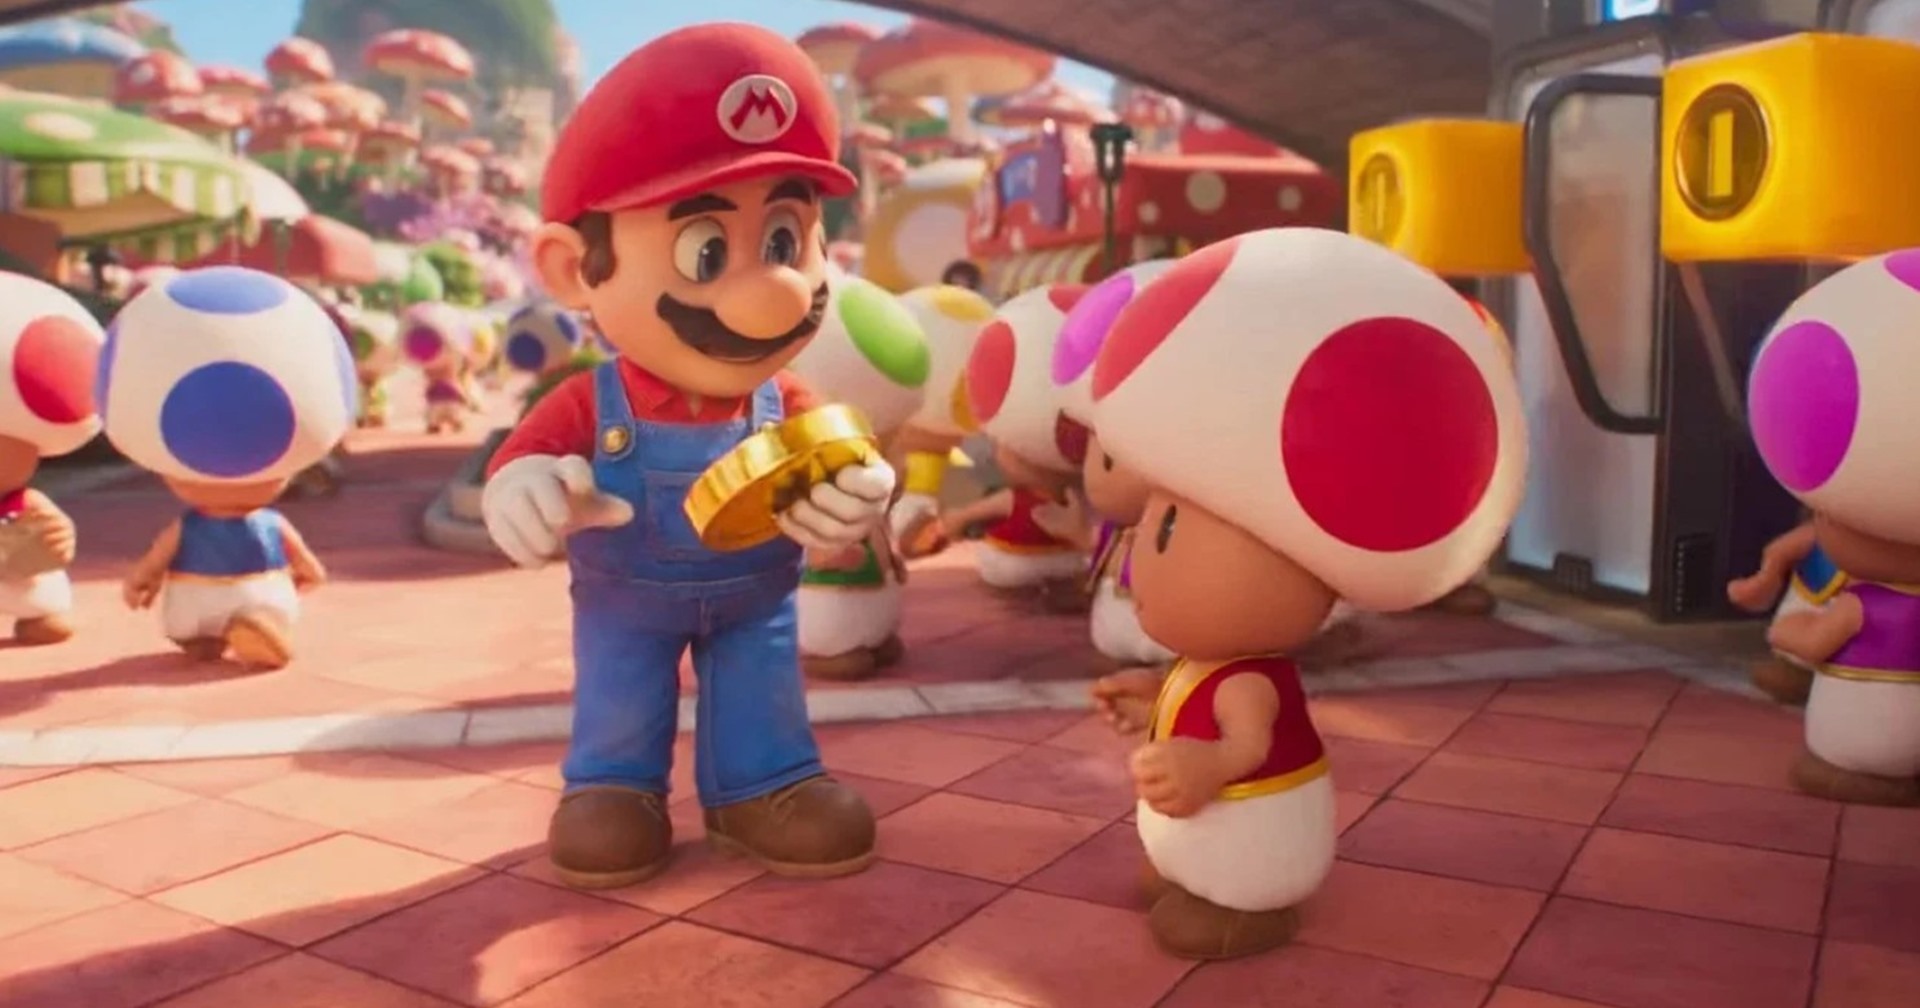 นักวิเคราะห์คาด The Super Mario Bros. Movie จะทำรายได้เปิดตัวแรงสุดในปี 2023